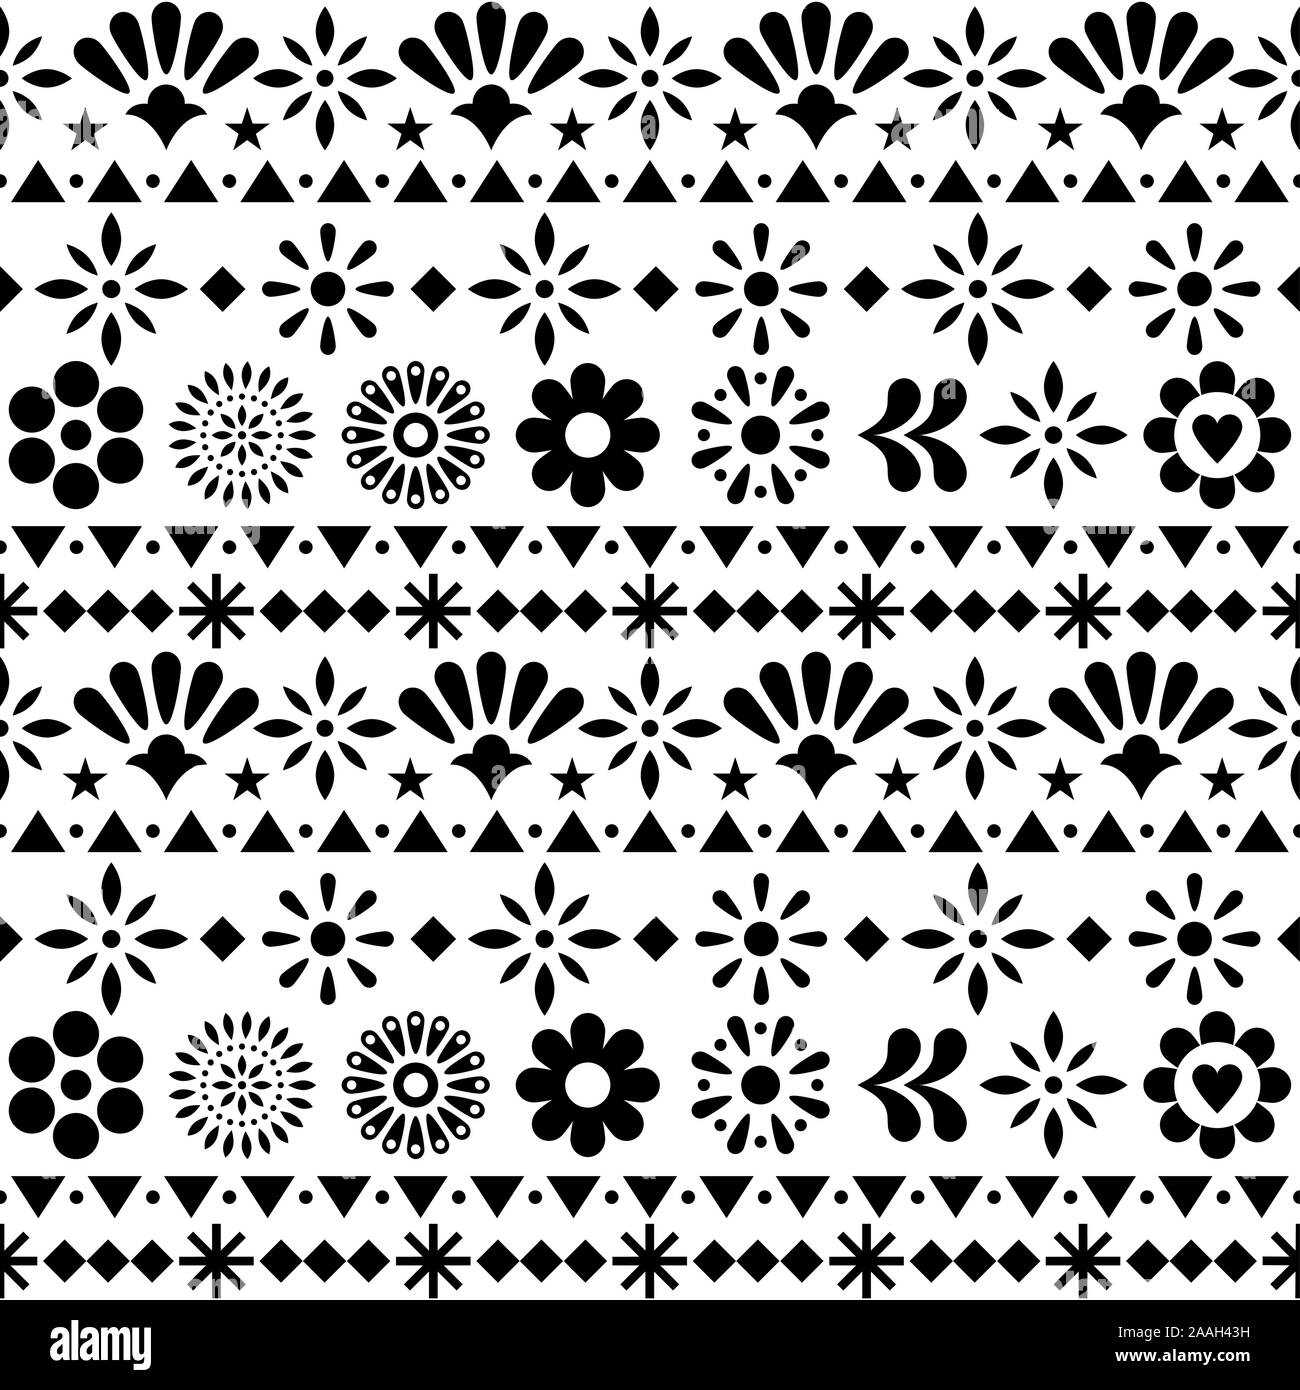 Mexikanische nahtlose Vektor Muster mit Blumen und abstrakten Formen - Blumig, glücklich, Textil schwarz-weiß Design Stock Vektor